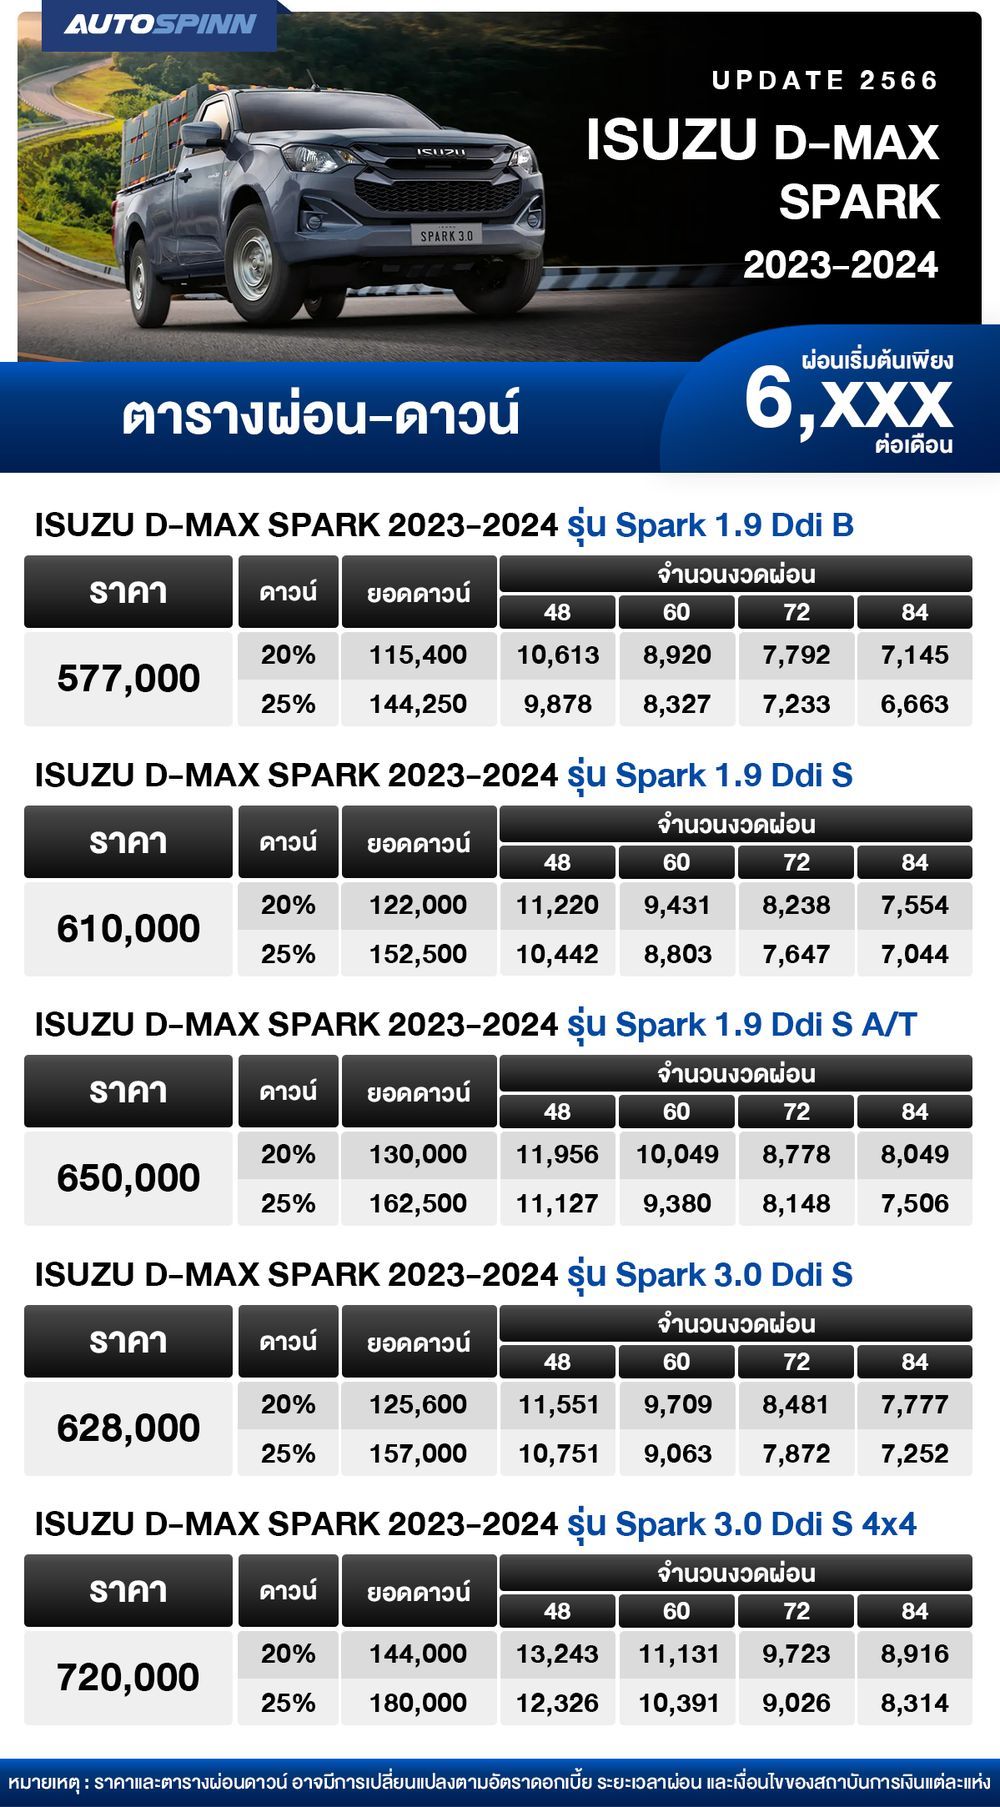 ตารางผ่อน ISUZU D-MAX SPARK 2023-2024 เริ่มต้น 6,xxx บาท